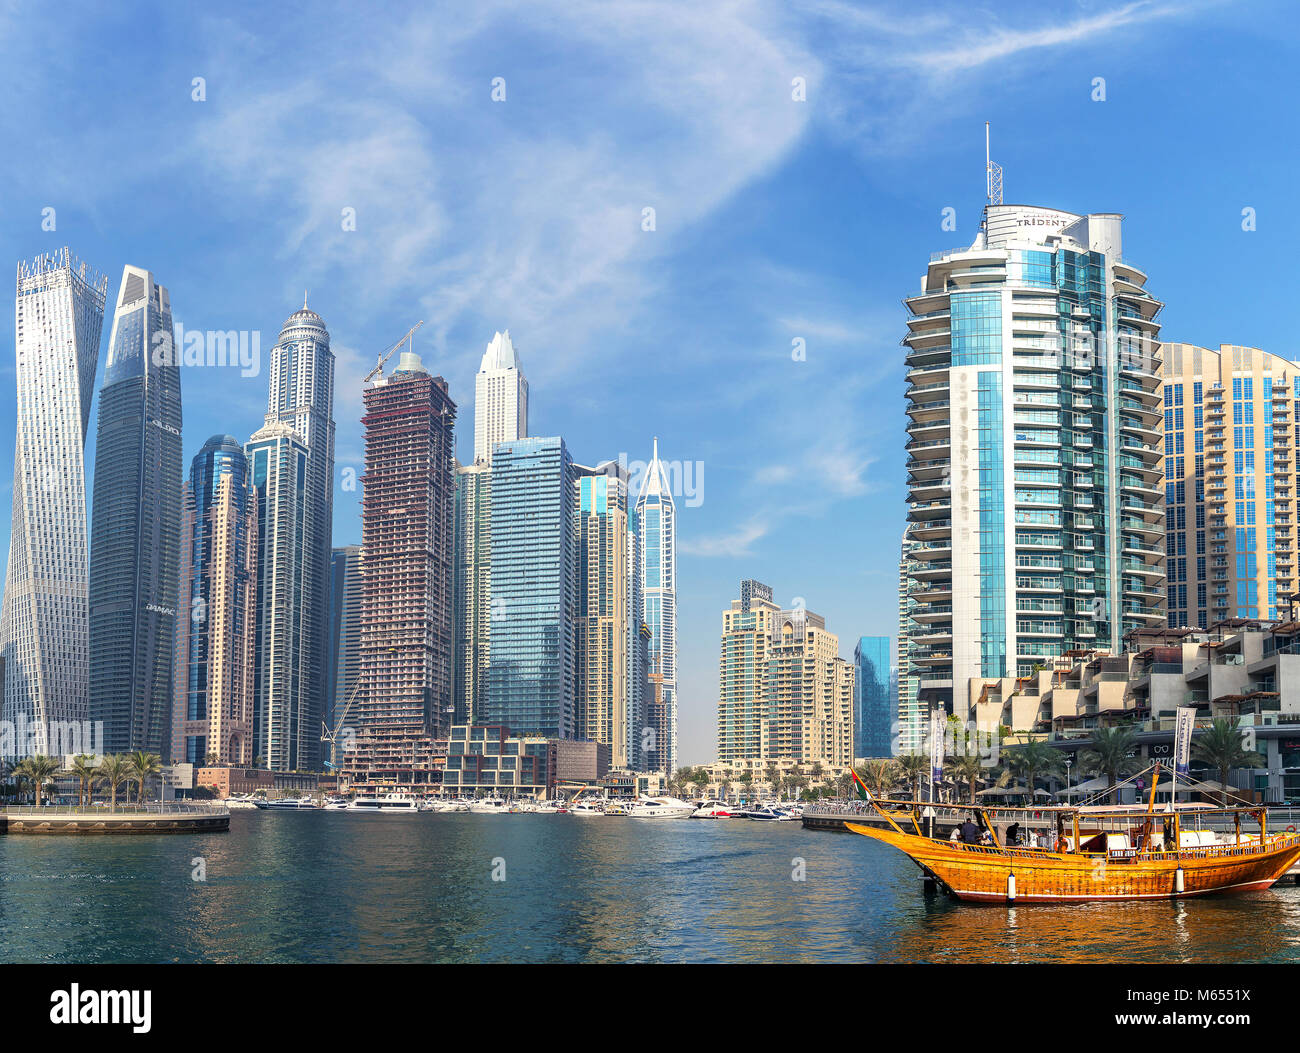 27 Décembre 2017 - Dubaï, Émirats arabes unis. La Marina de Dubaï est un canal artificiel ville, c'est plein d'awe-substitution, les bâtiments. Banque D'Images